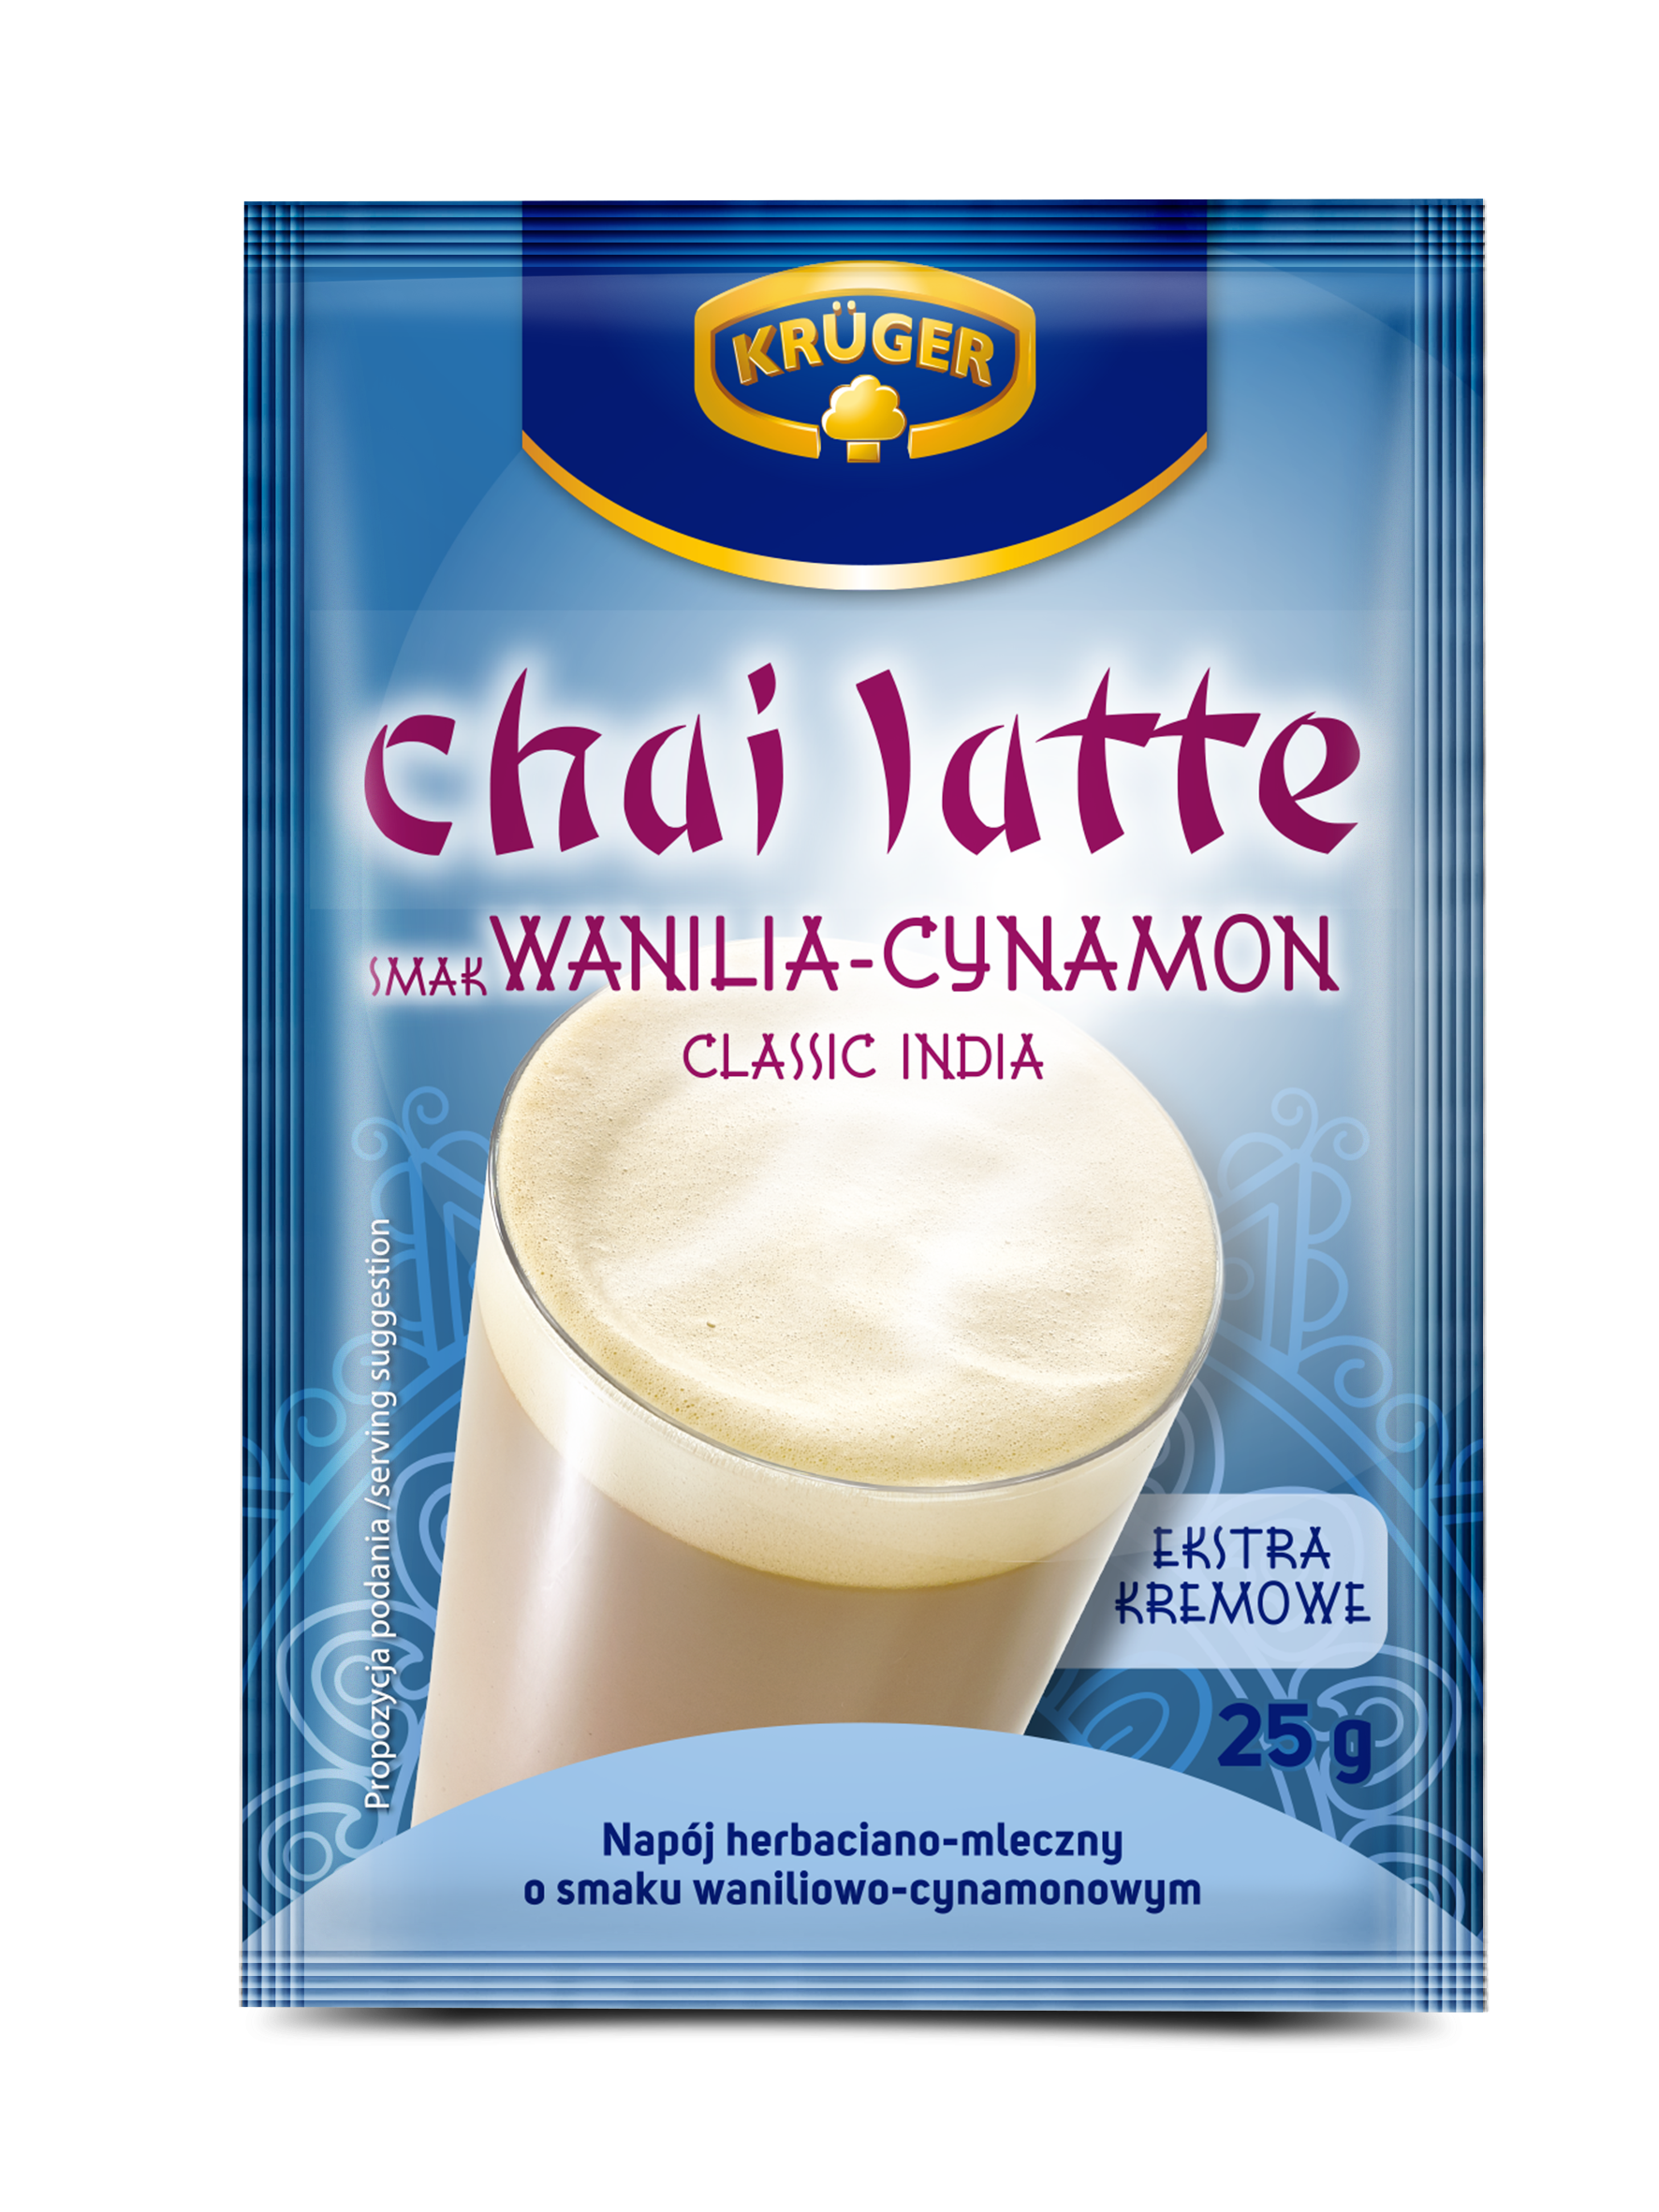 Krüger Chai Latte smak wanilia-cynamon